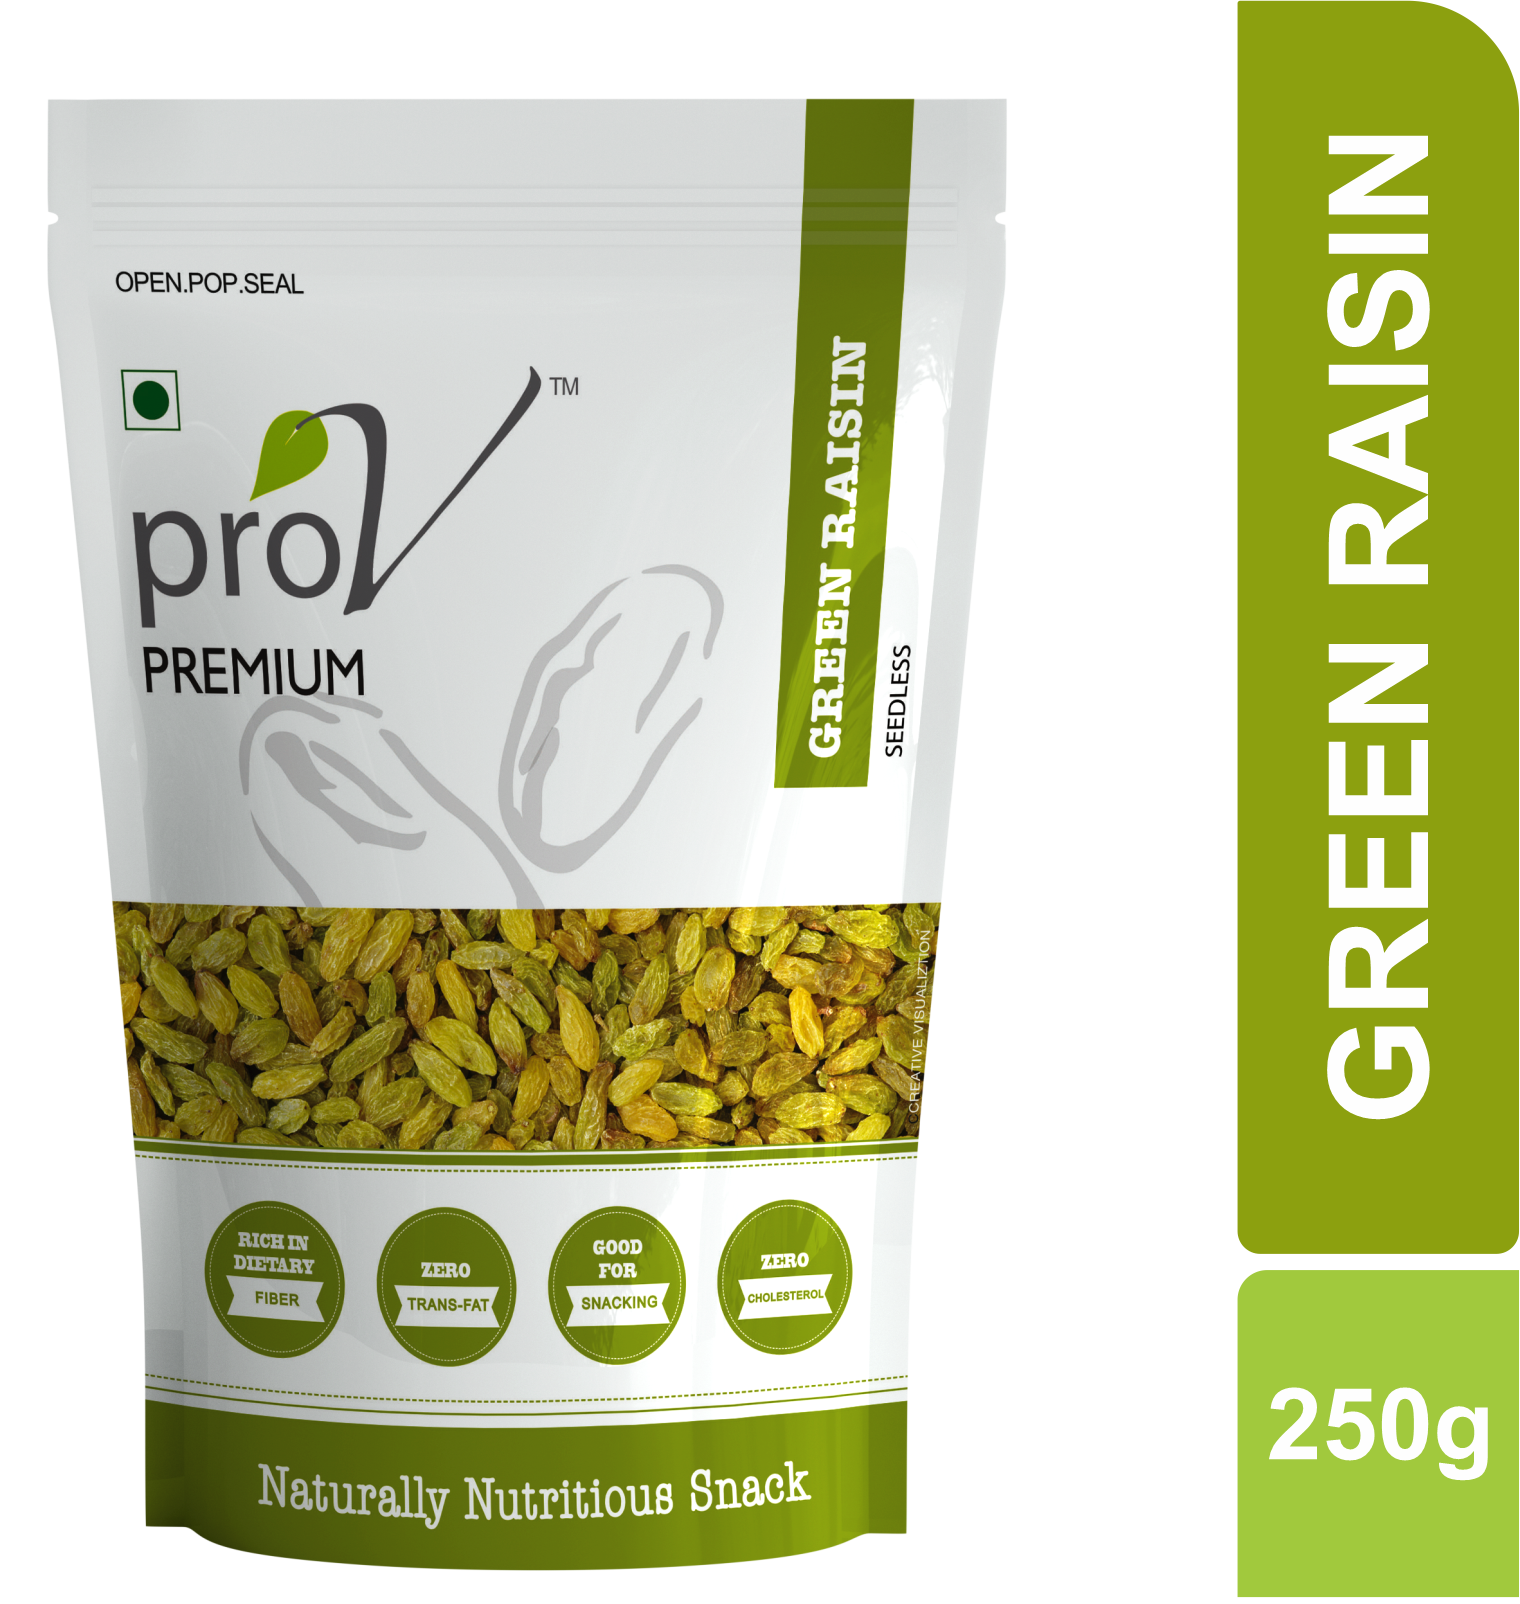 ProV Premium - Green Raisins 250g - Front3d.png